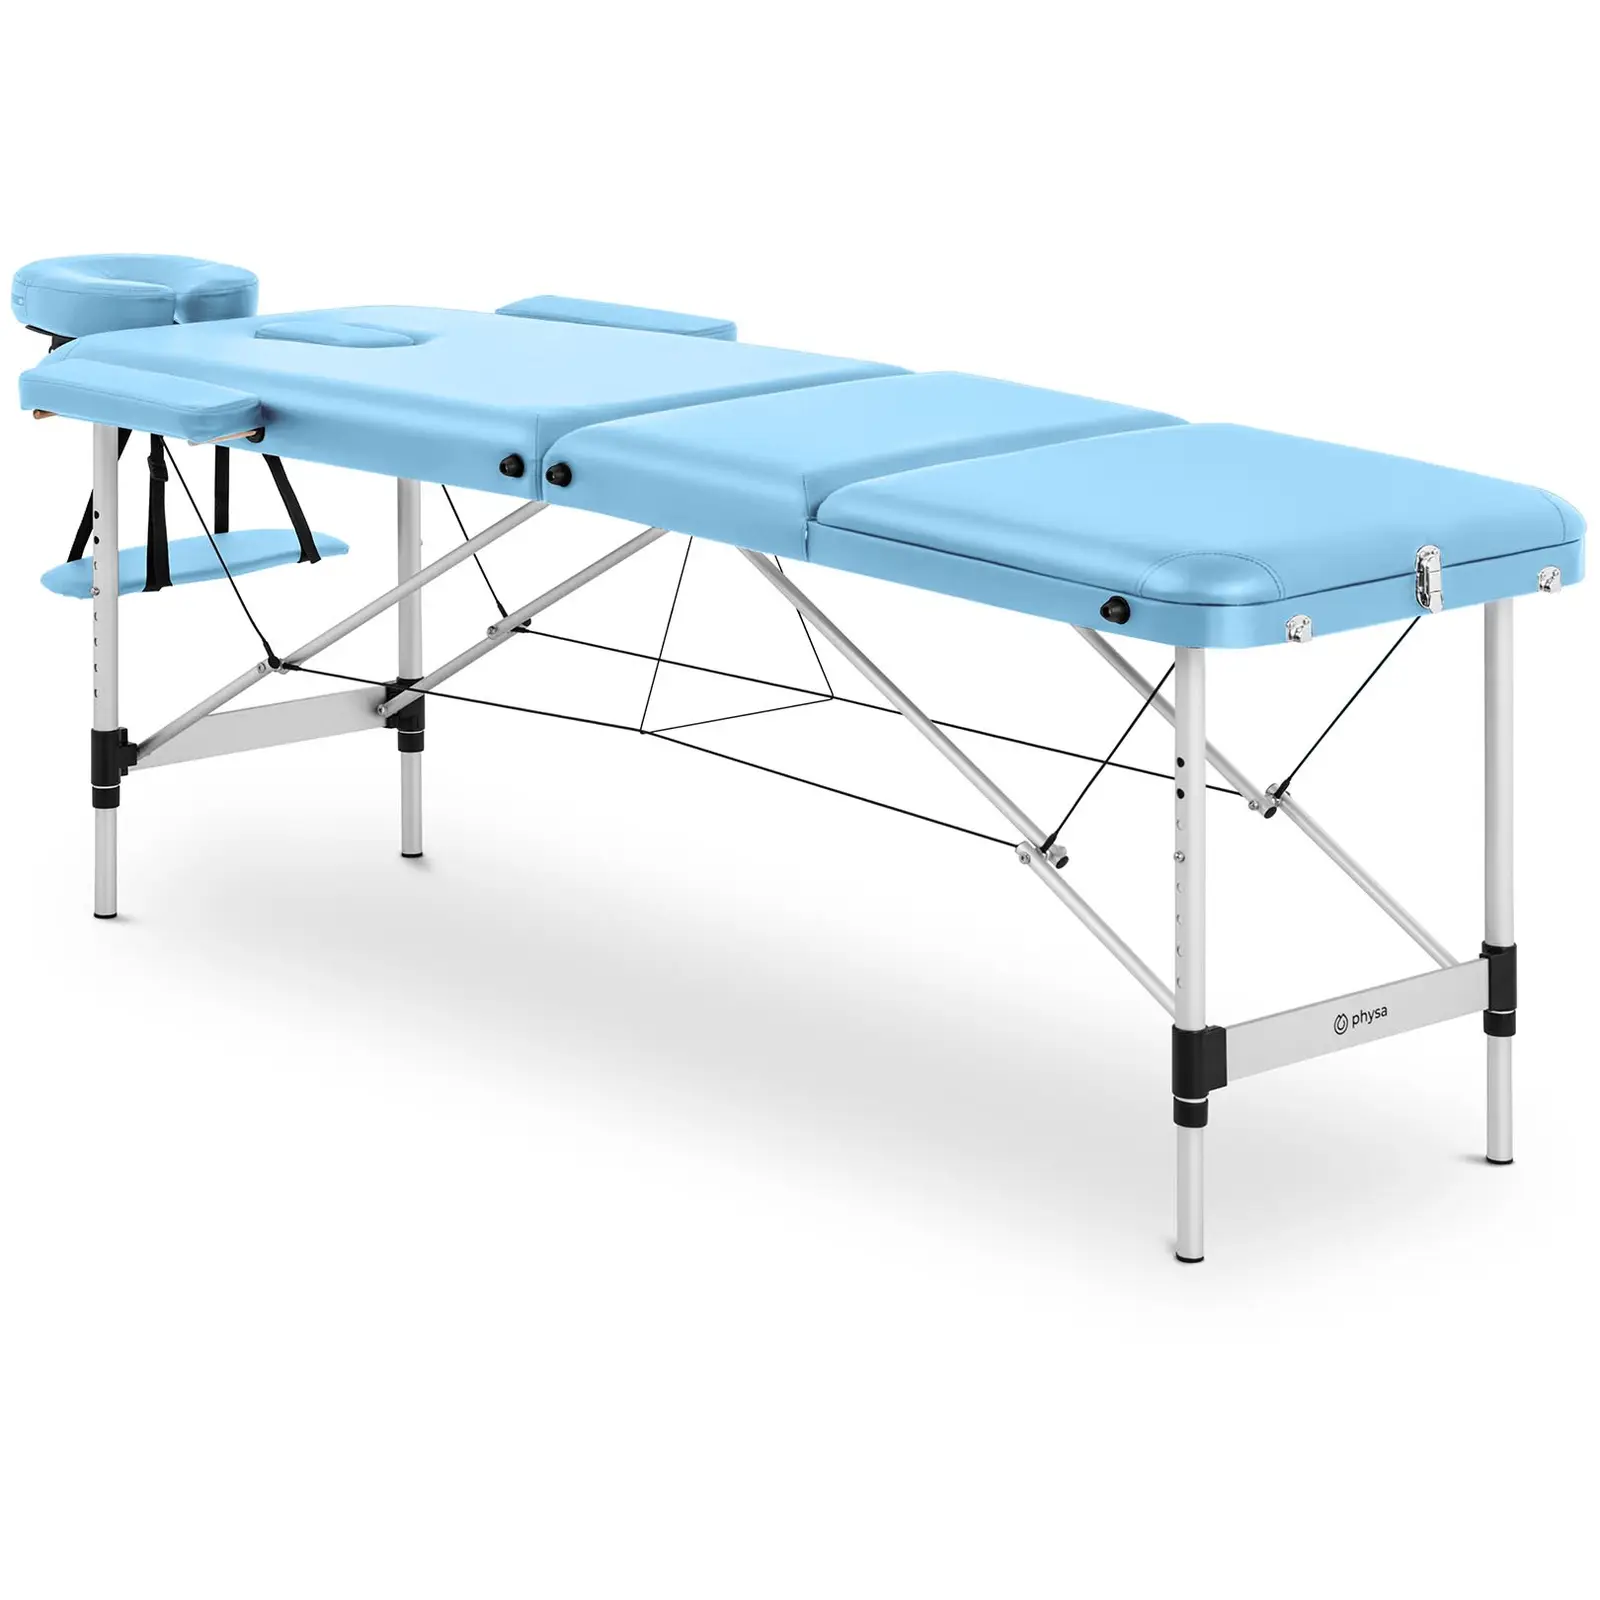 Lettino massaggio portatile - 185 x 60 x 60-81 cm - 180 kg - Turchese